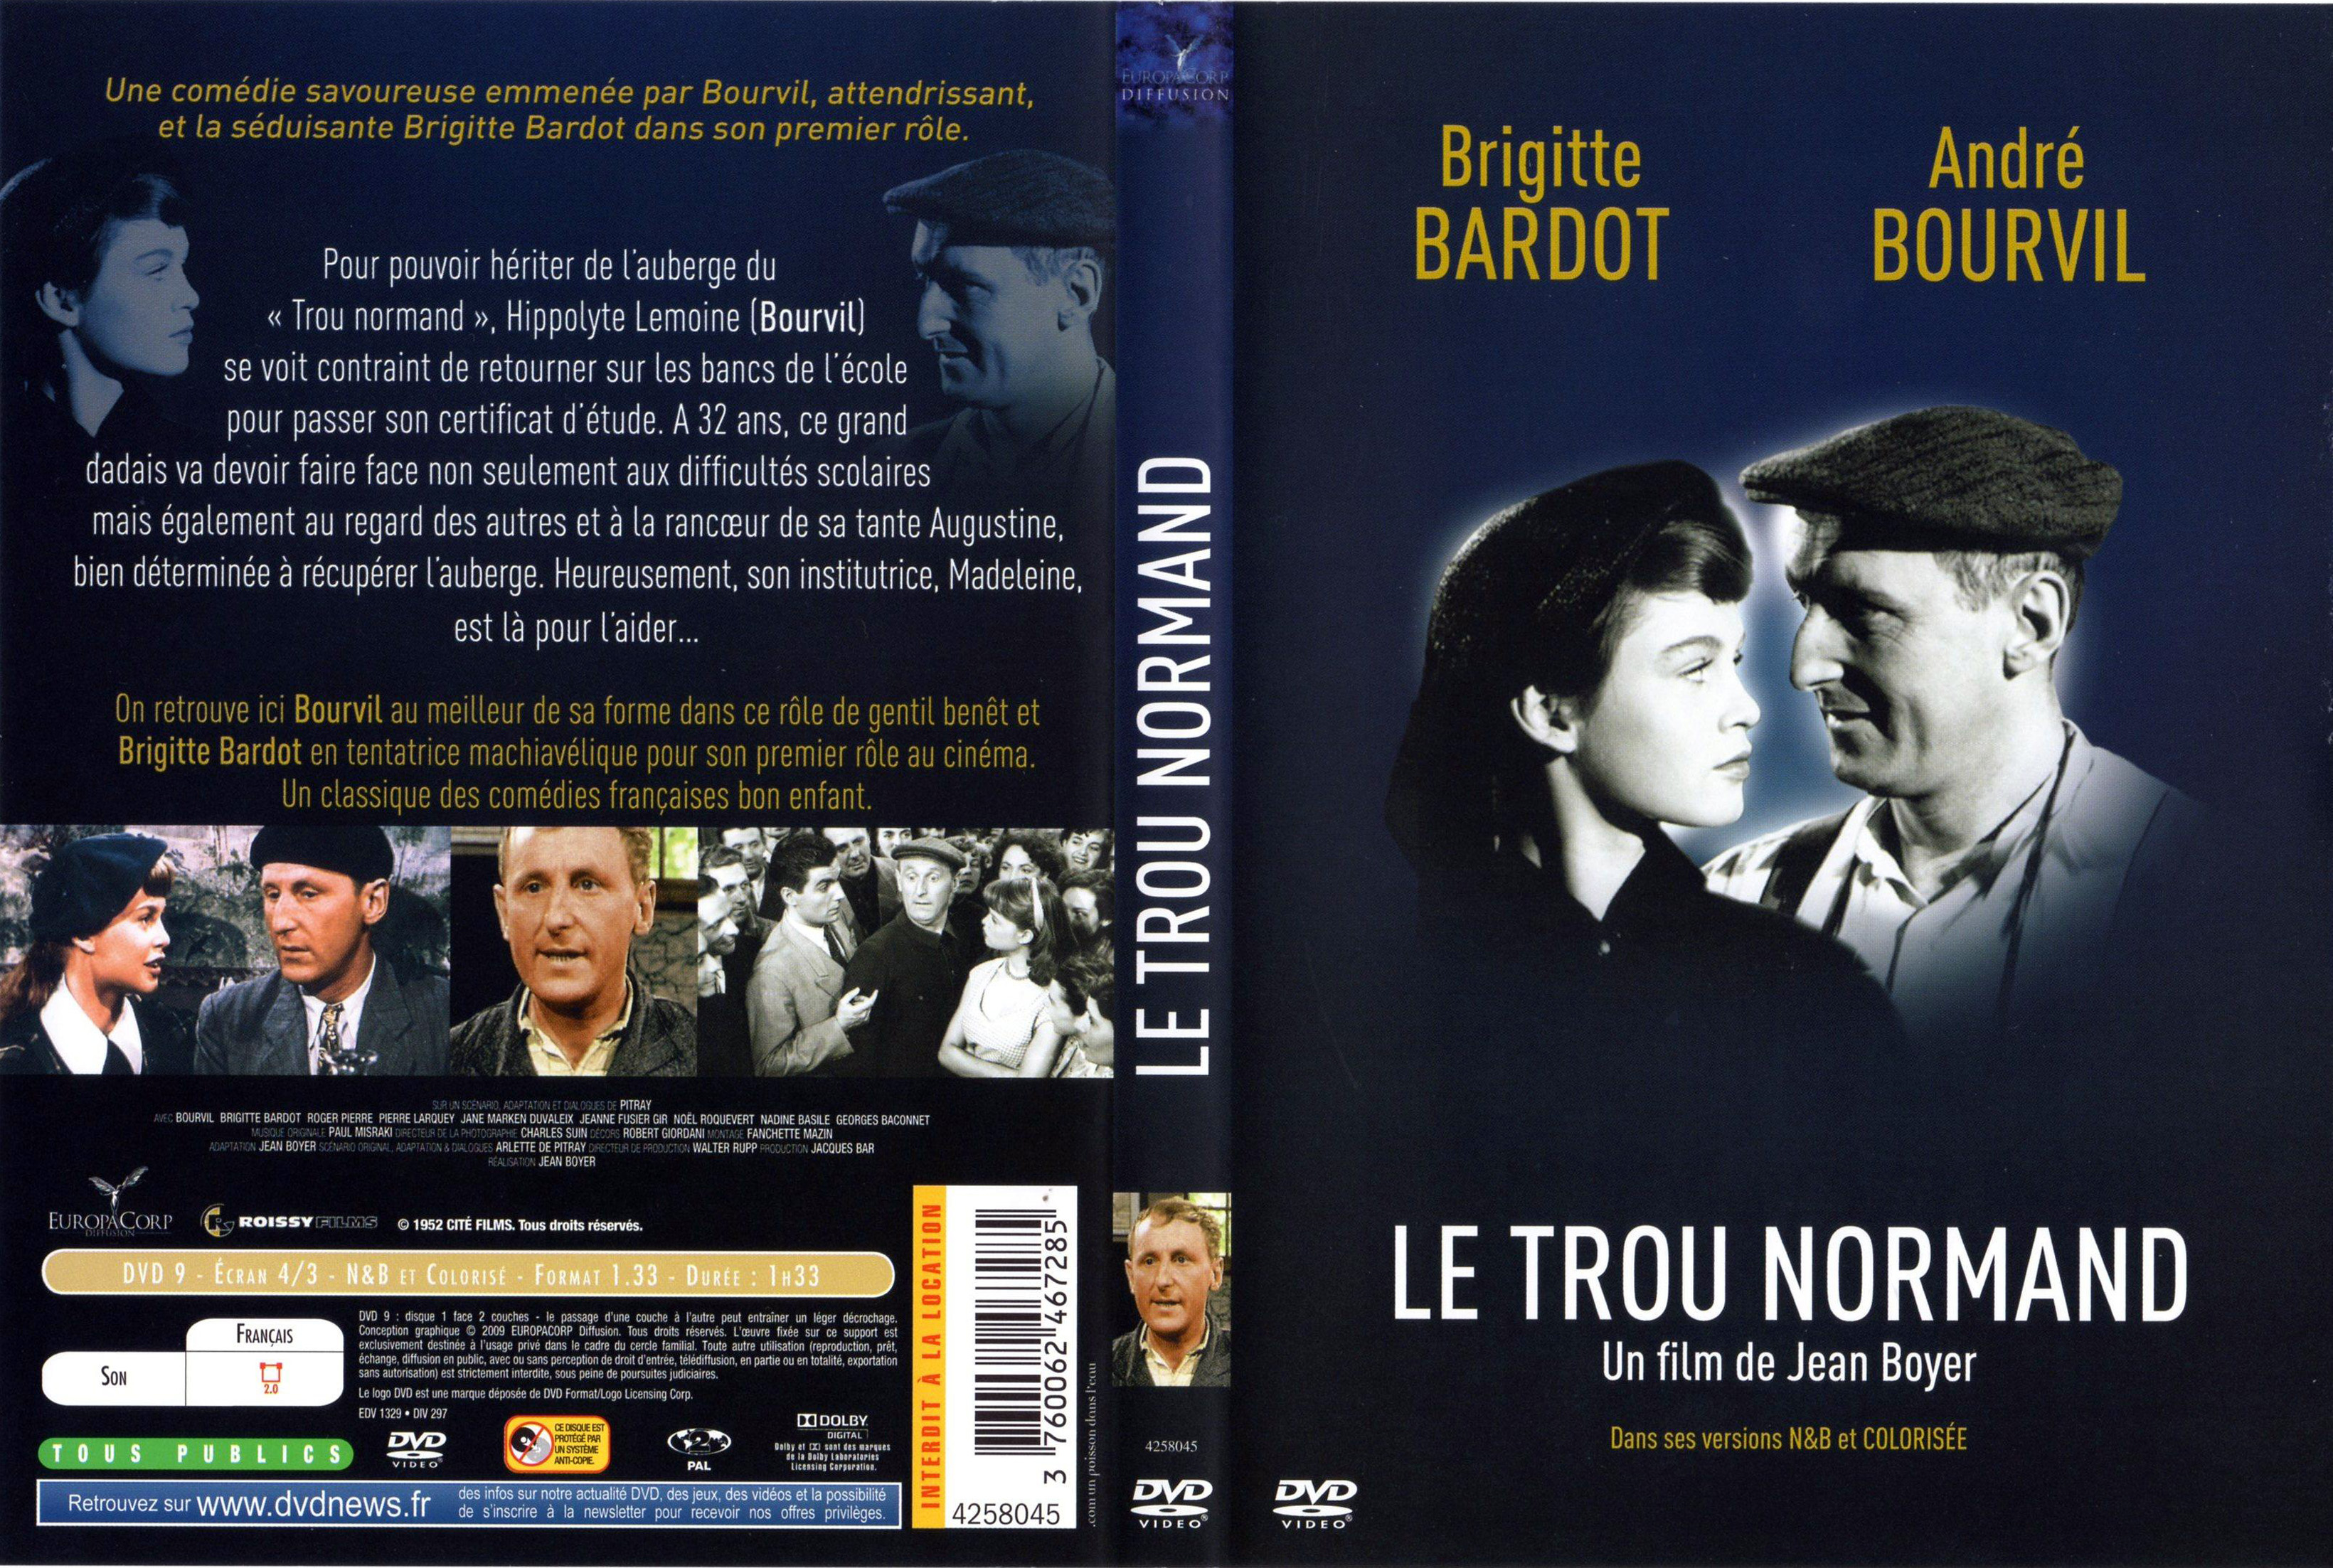 Jaquette DVD Le trou normand v2